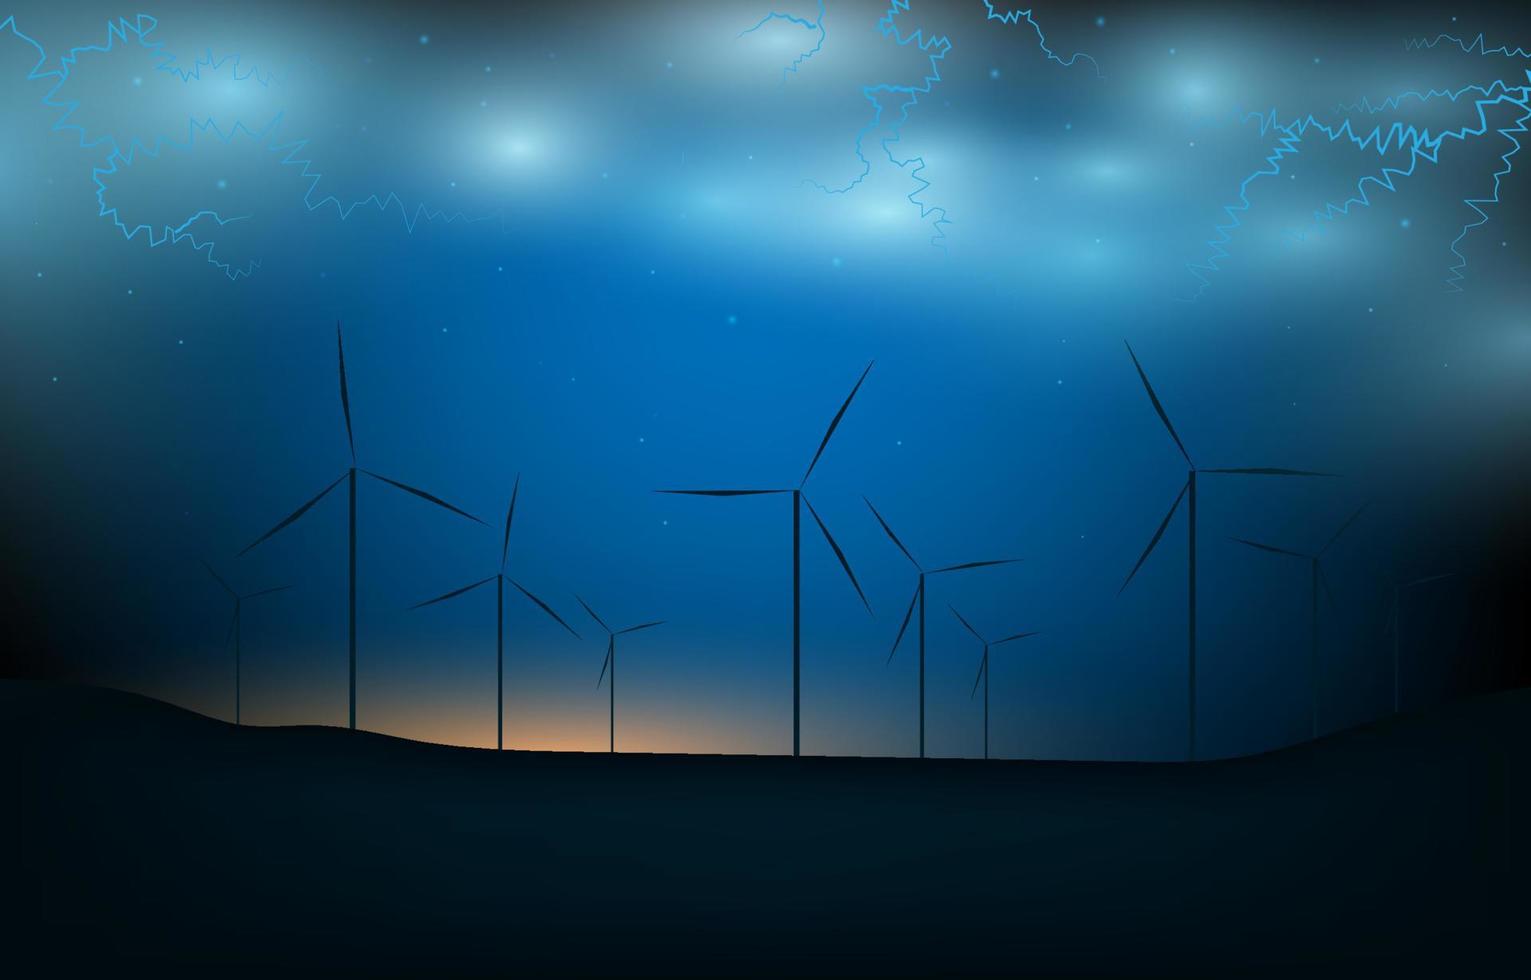 concepto de energía renovable y ecológica. tecnología molino de viento energía. molino de viento abstracto con amanecer, relámpagos y montaña sobre fondo azul degradado. vector de paisaje de turbina de energía eólica.